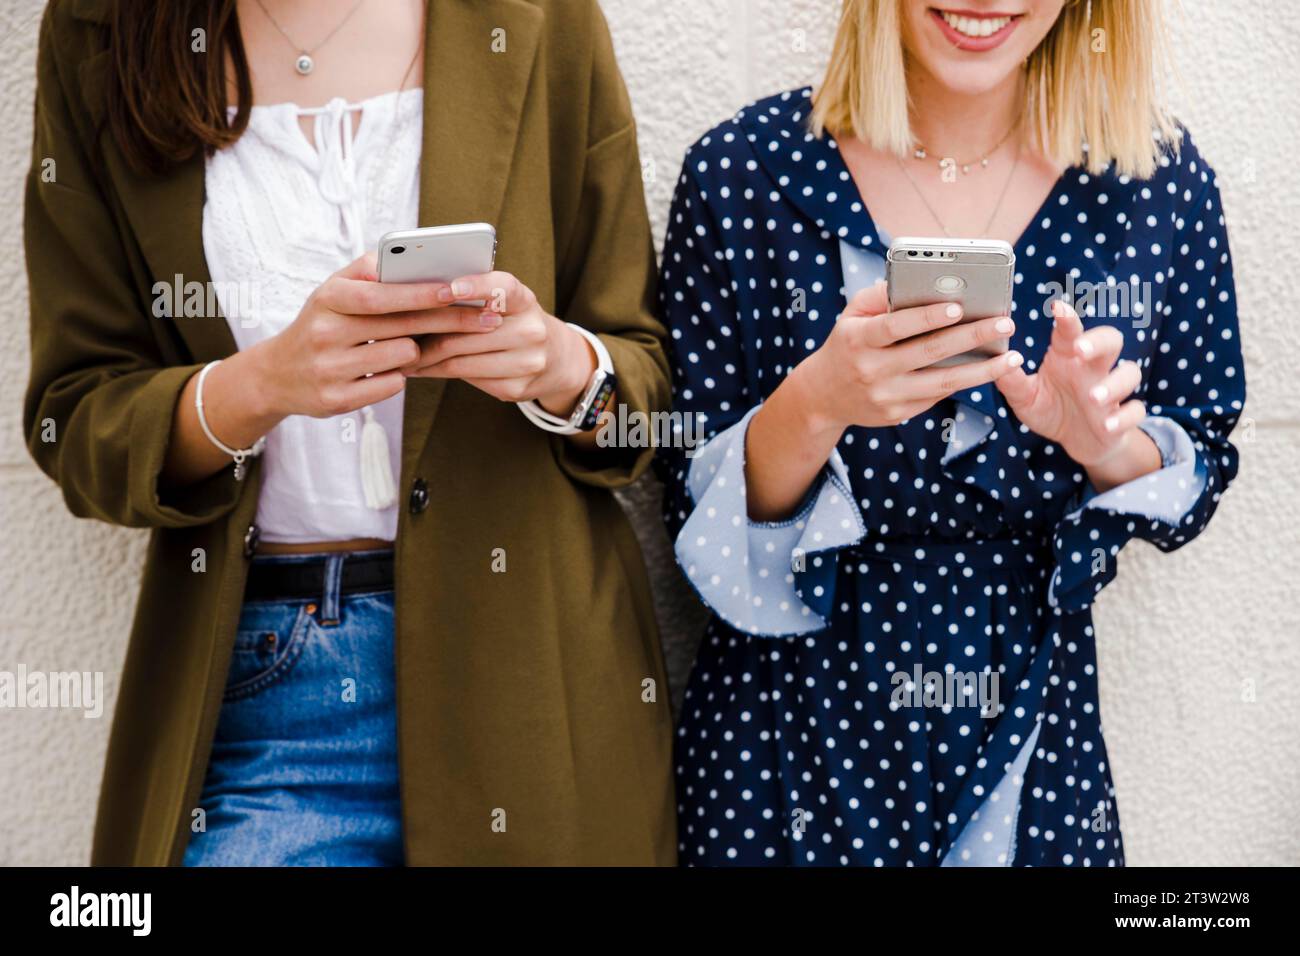 Weibliche Freunde, die sich mit dem Smartphone an die Wand lehnen Stockfoto